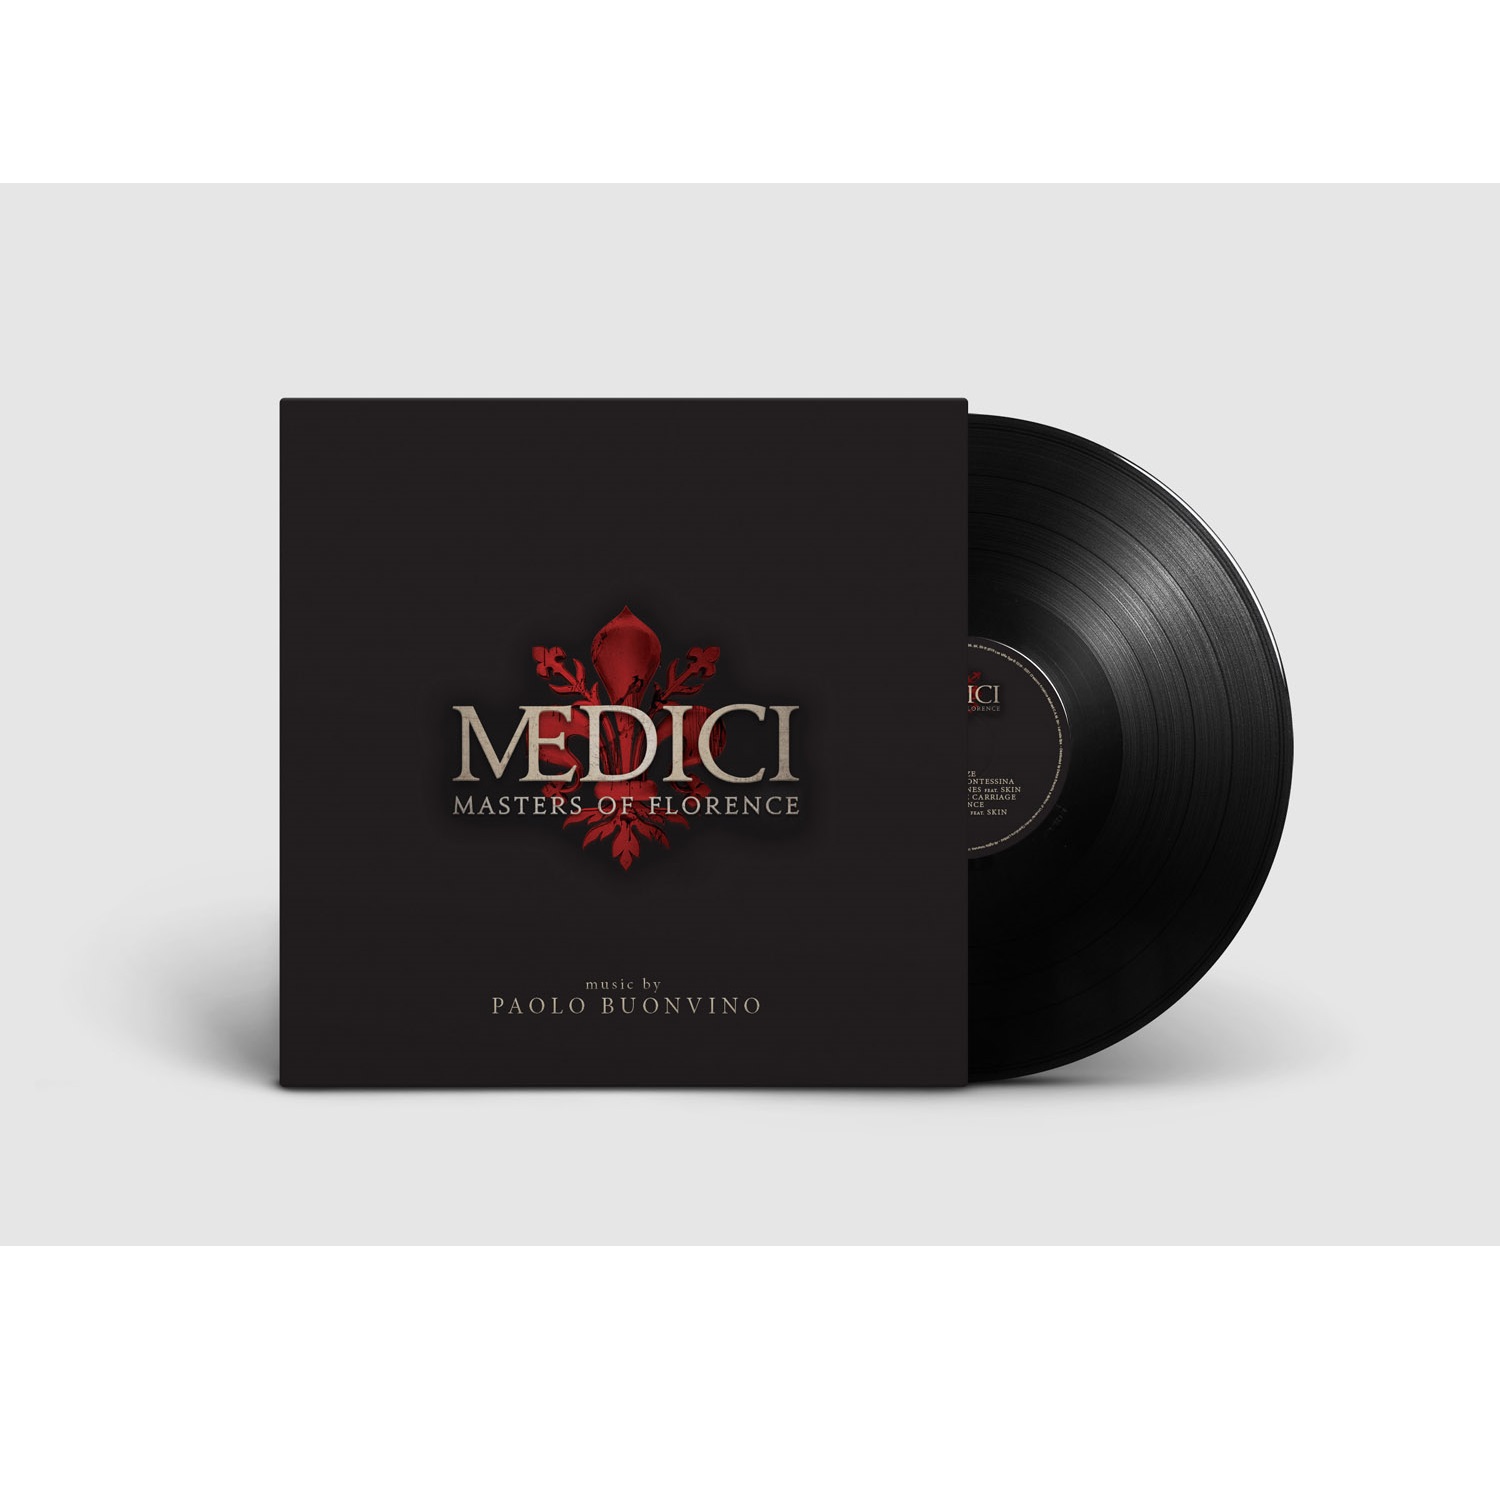 '메디치: 마스터즈 오브 플로렌스' 넷플릭스 드라마 음악 (MEDICI: Masters of Florence OST) [LP] 